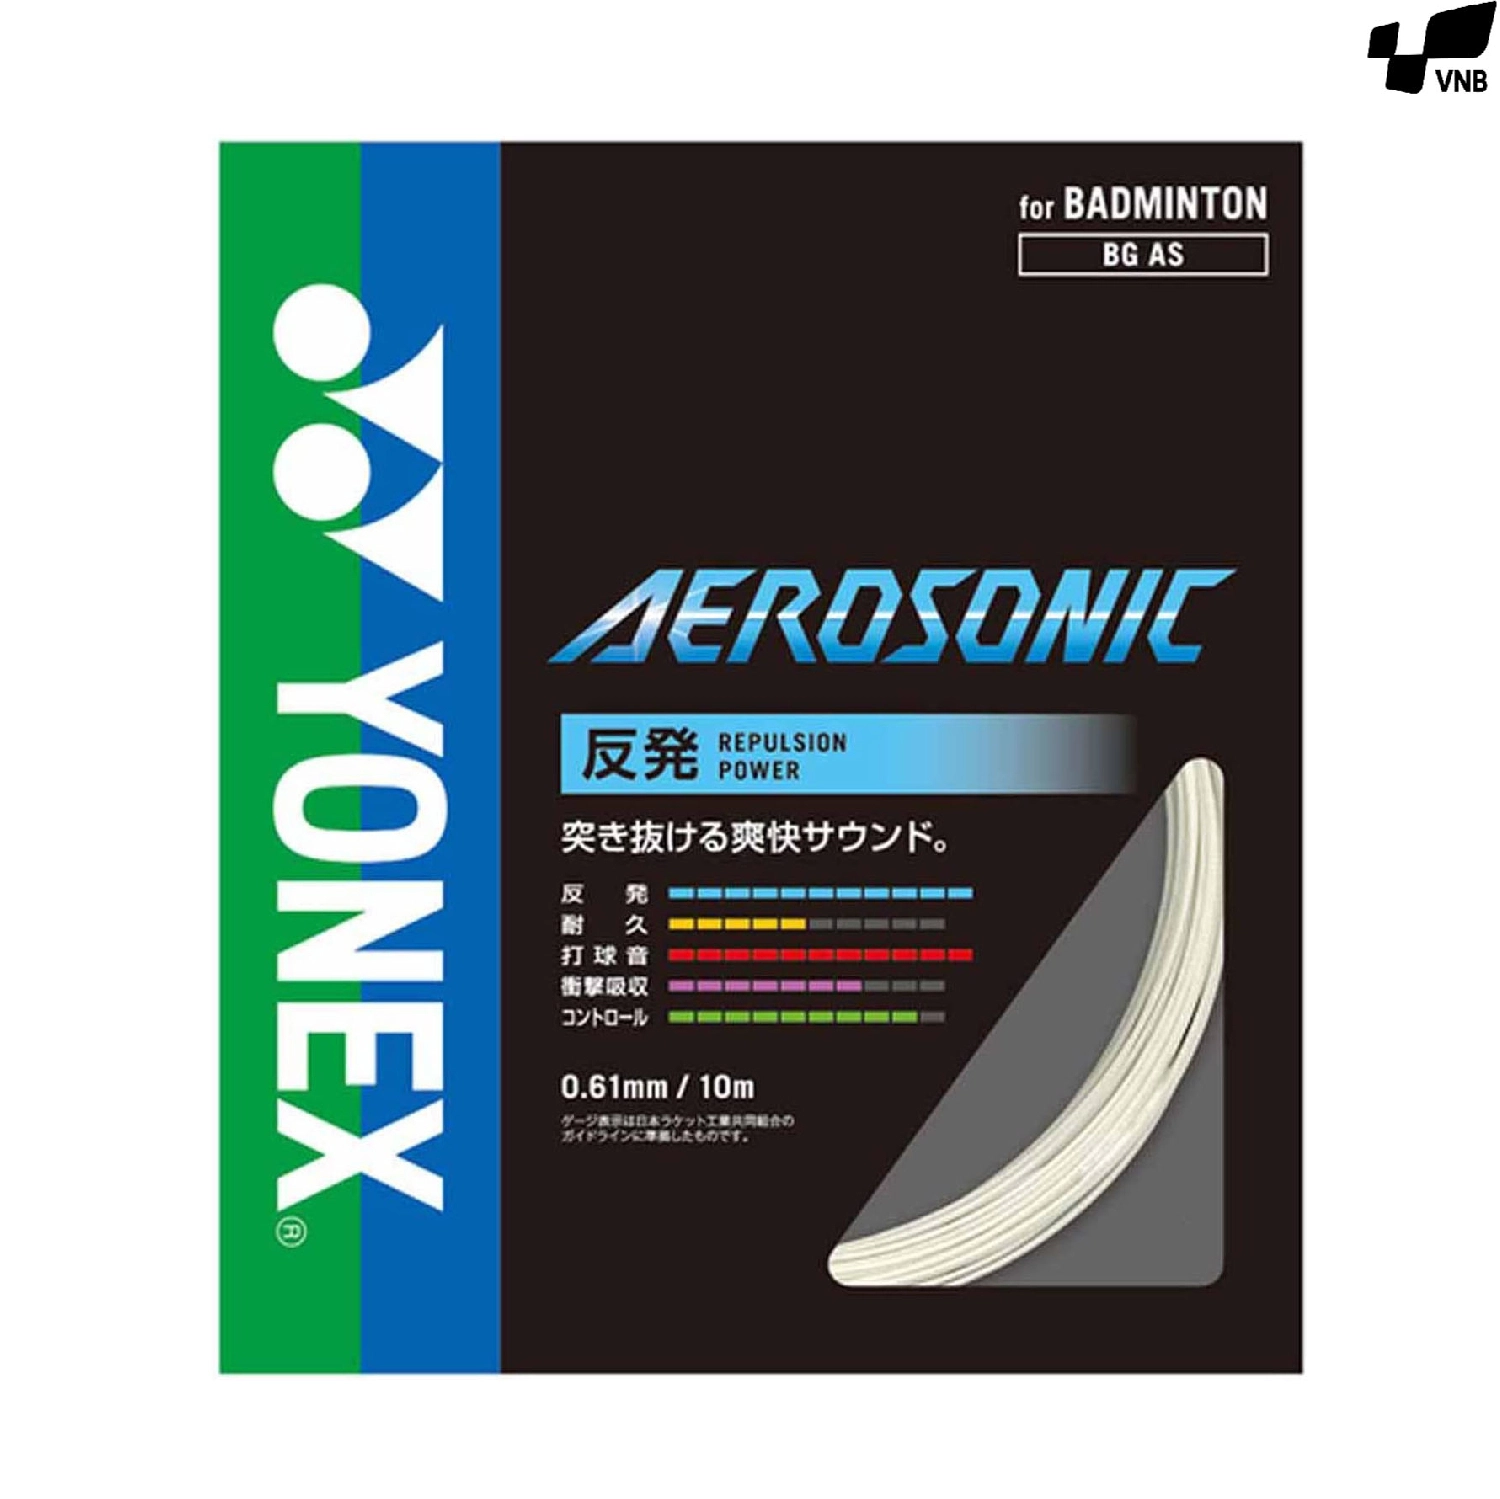 Dây cước vợt Yonex Aerosonic (Mã JP)